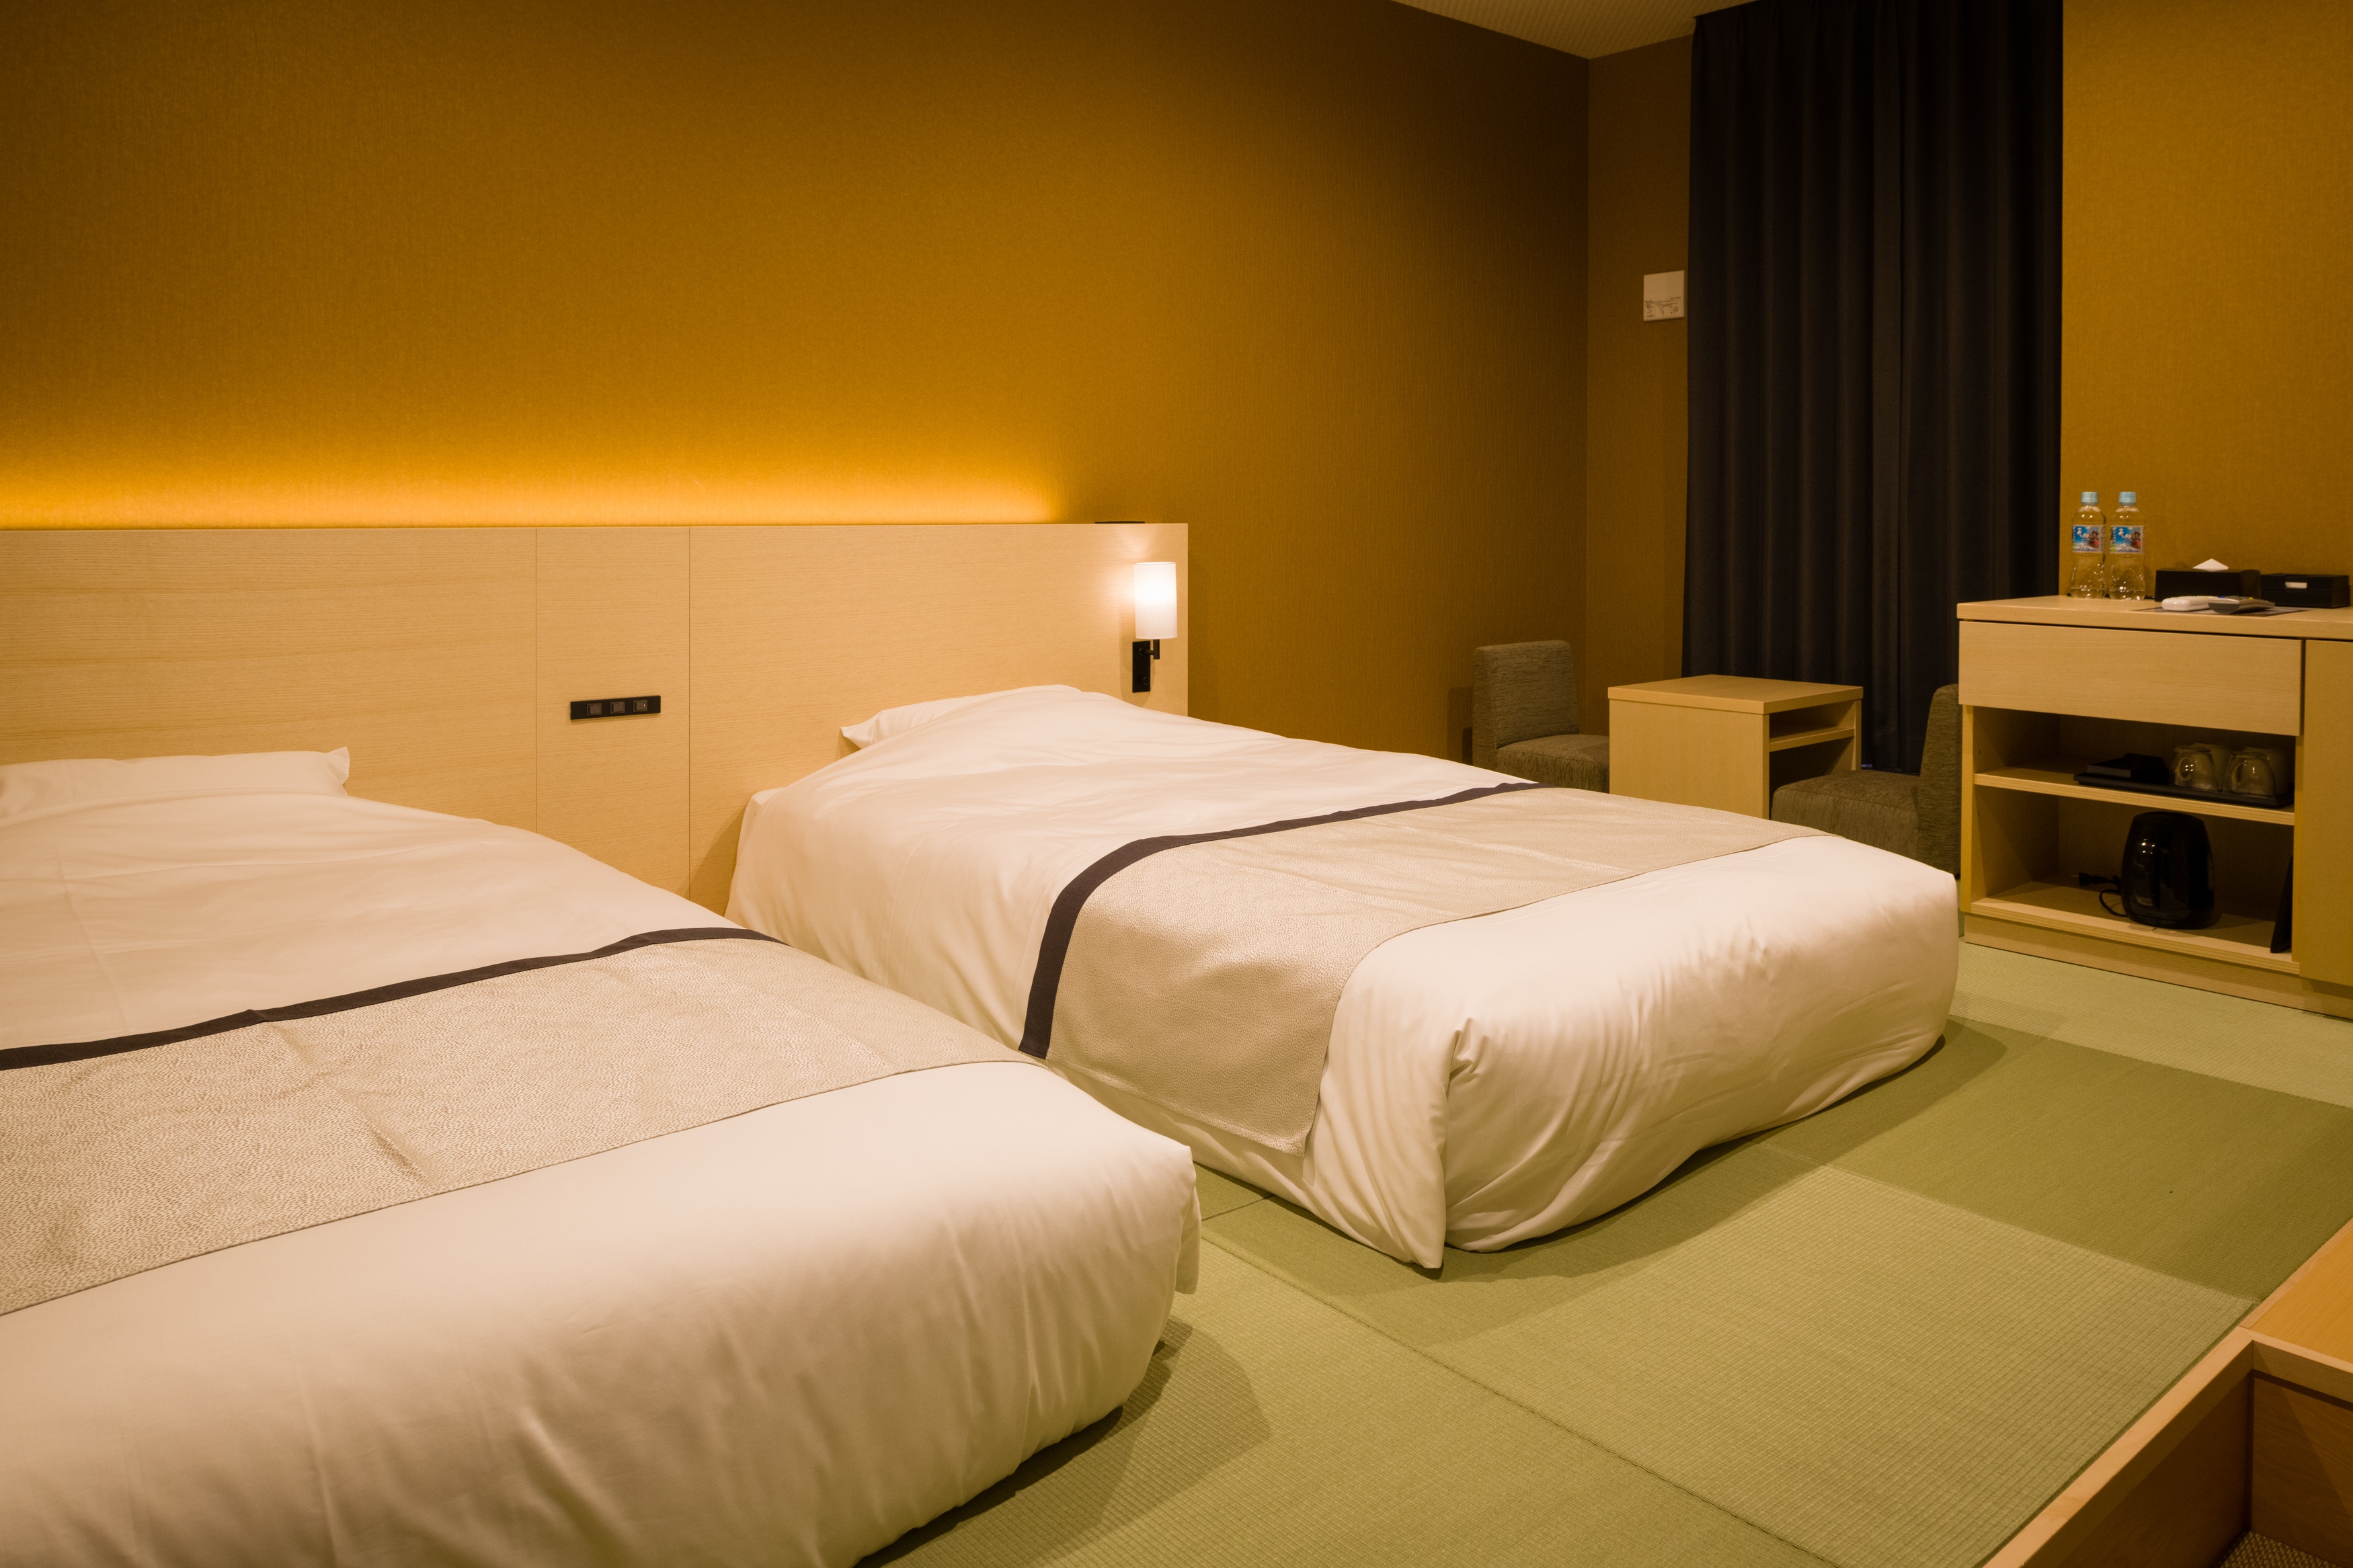 ห้องเตียงแฝดสไตล์ญี่ปุ่นที่ทันสมัย